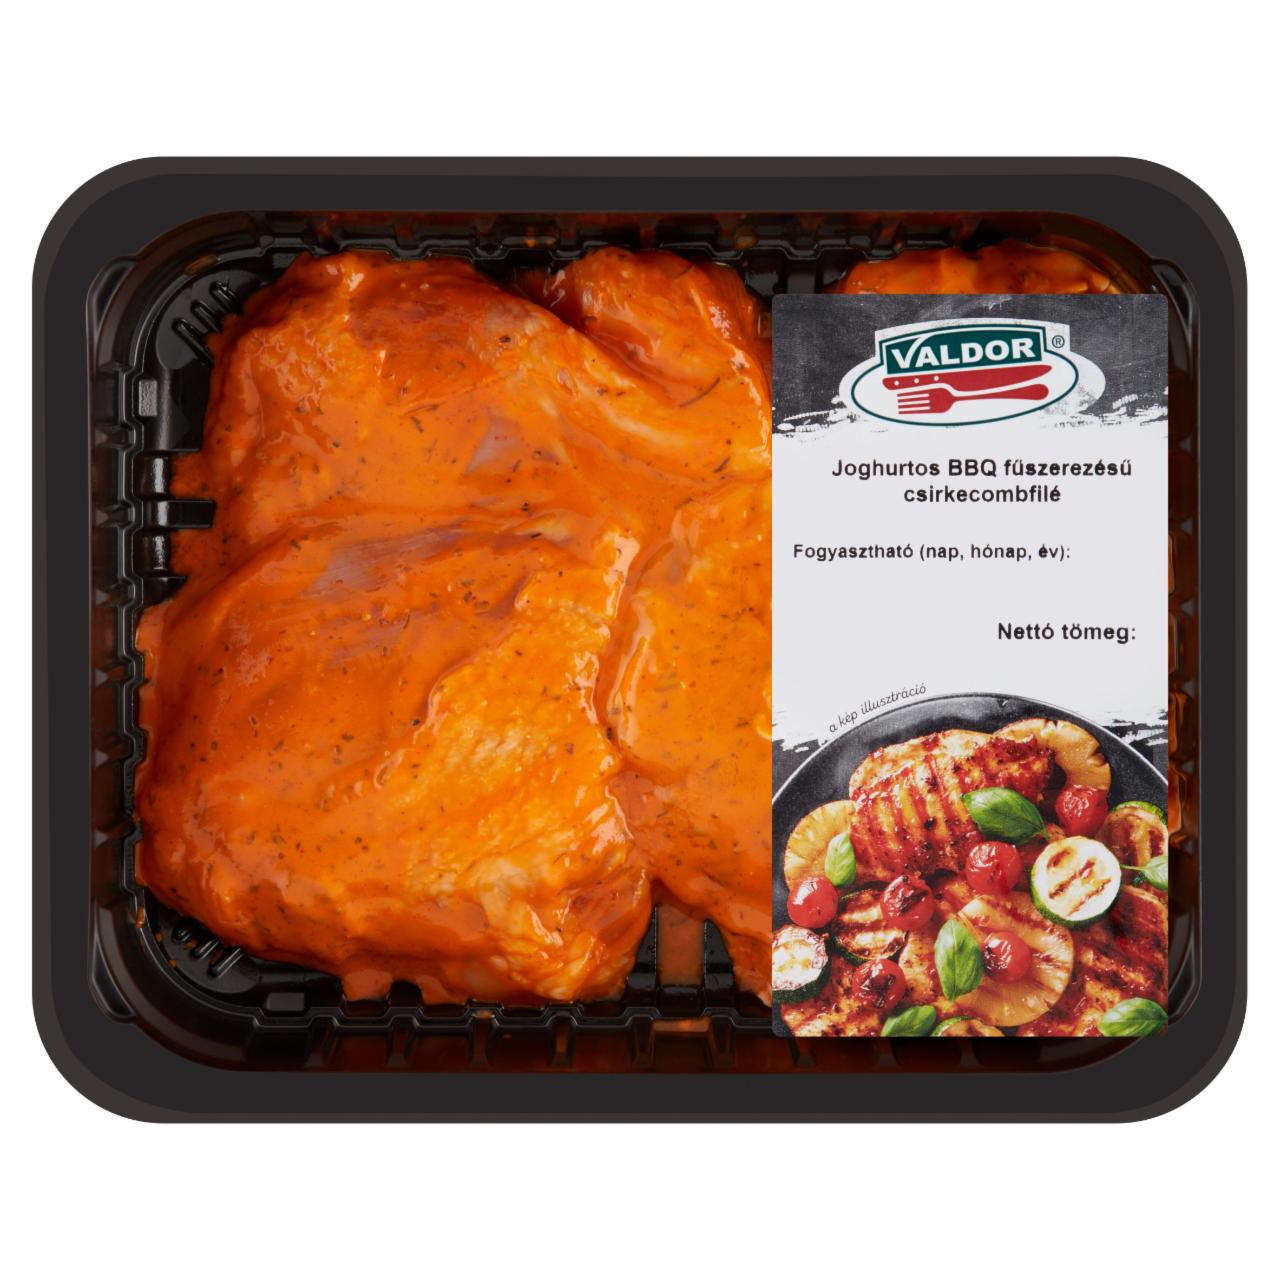 Képek - Valdor joghurtos BBQ fűszerezésű csirkecombfilé 450 g